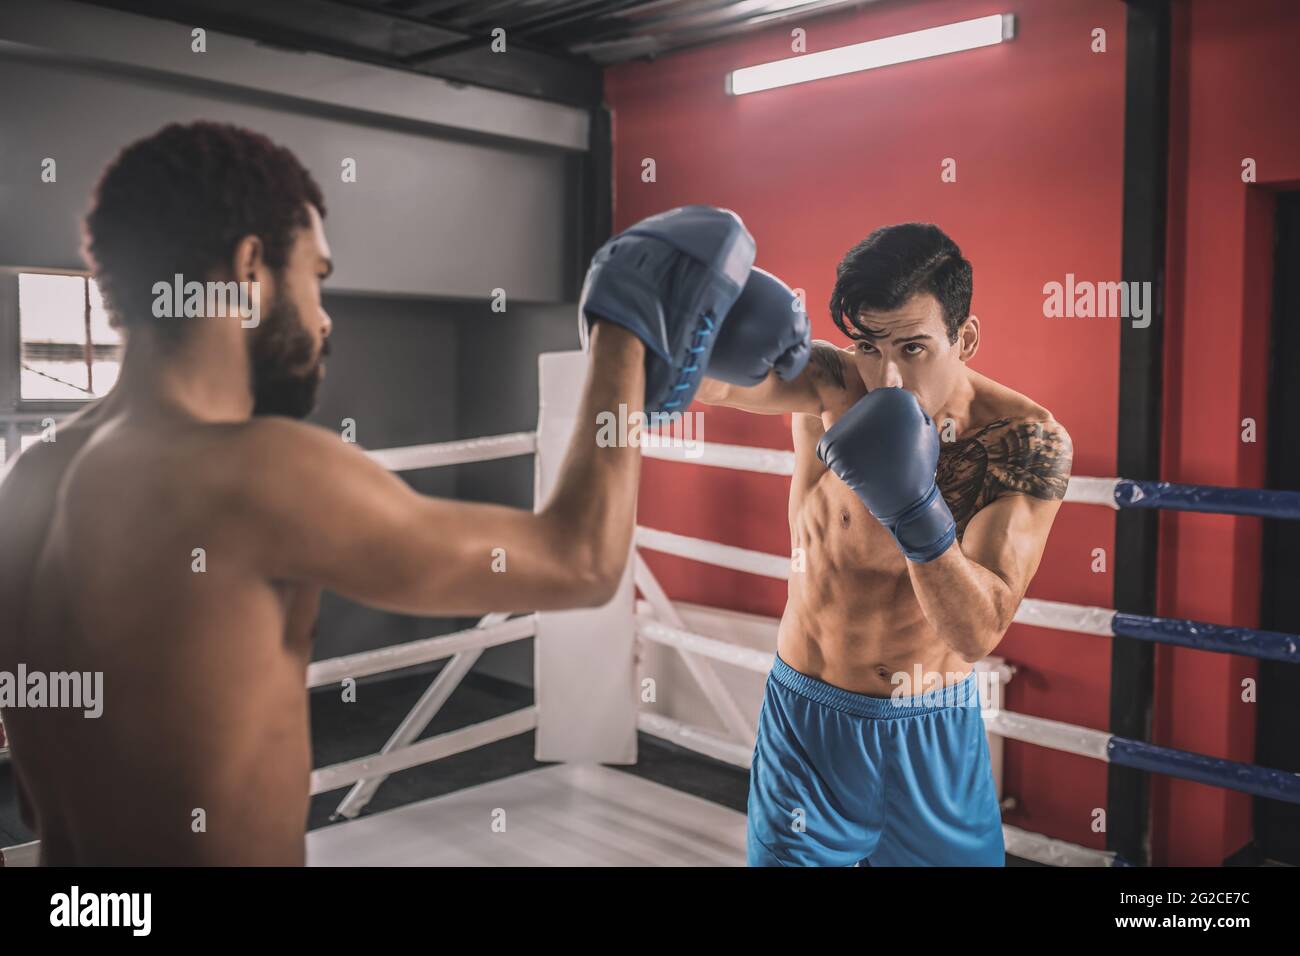 Junge Männer kämpfen auf einem Boxring und sehen entschlossen aus Stockfoto